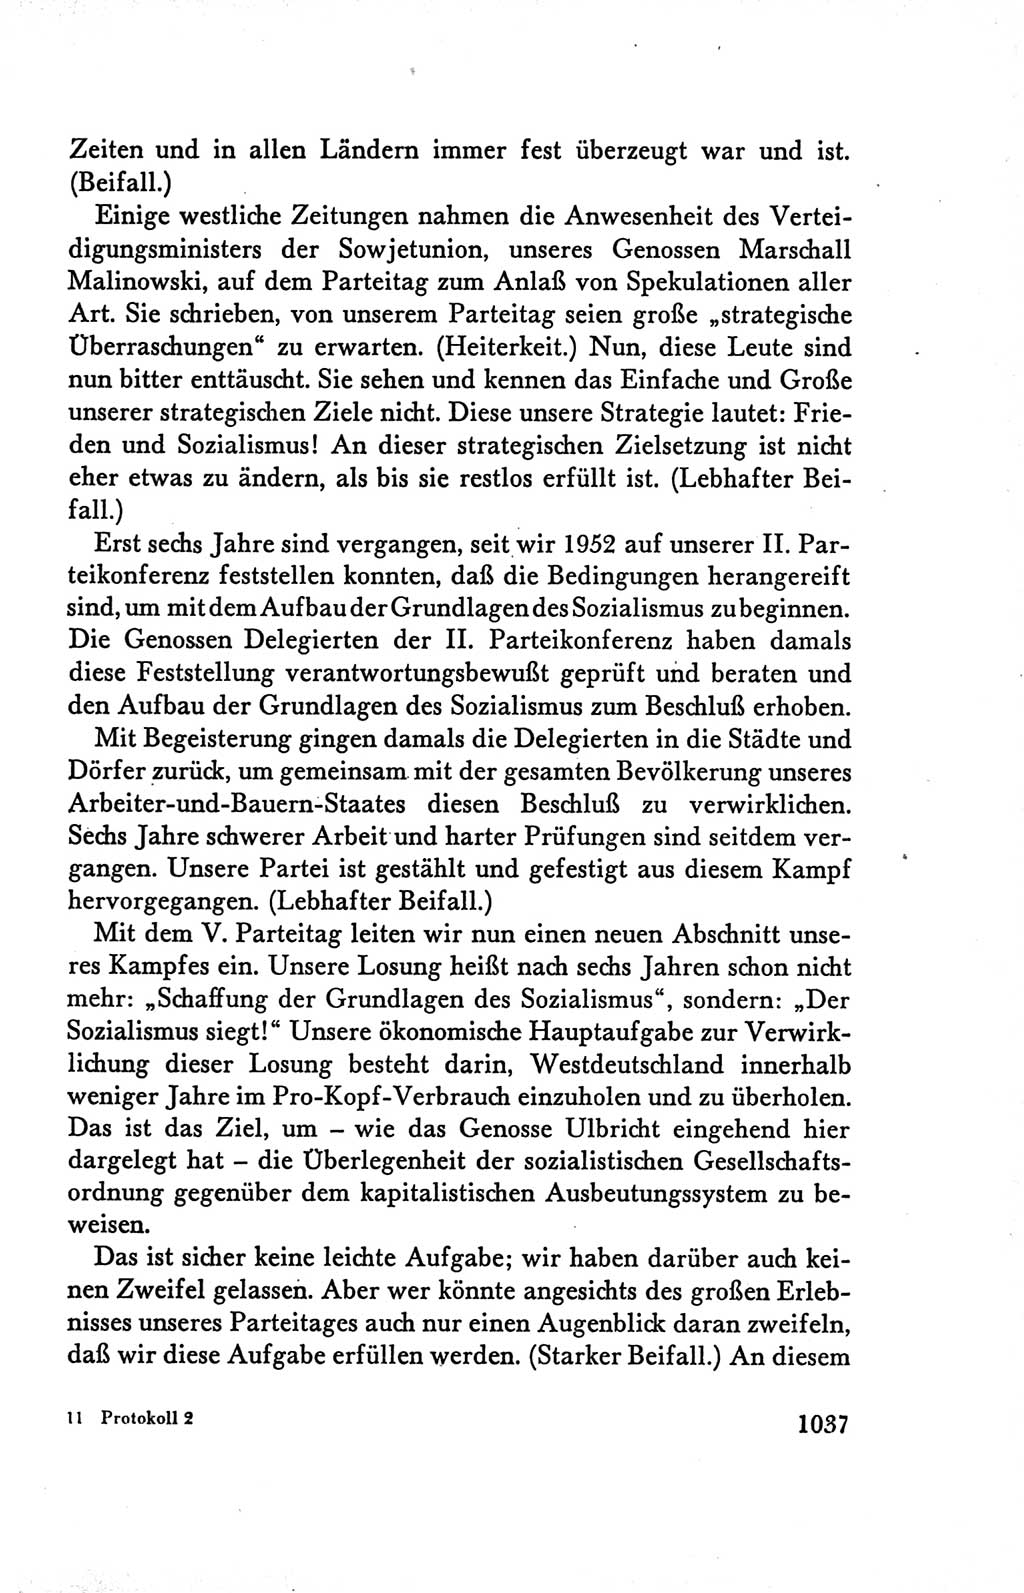 Protokoll der Verhandlungen des Ⅴ. Parteitages der Sozialistischen Einheitspartei Deutschlands (SED) [Deutsche Demokratische Republik (DDR)] 1958, Seite 1037